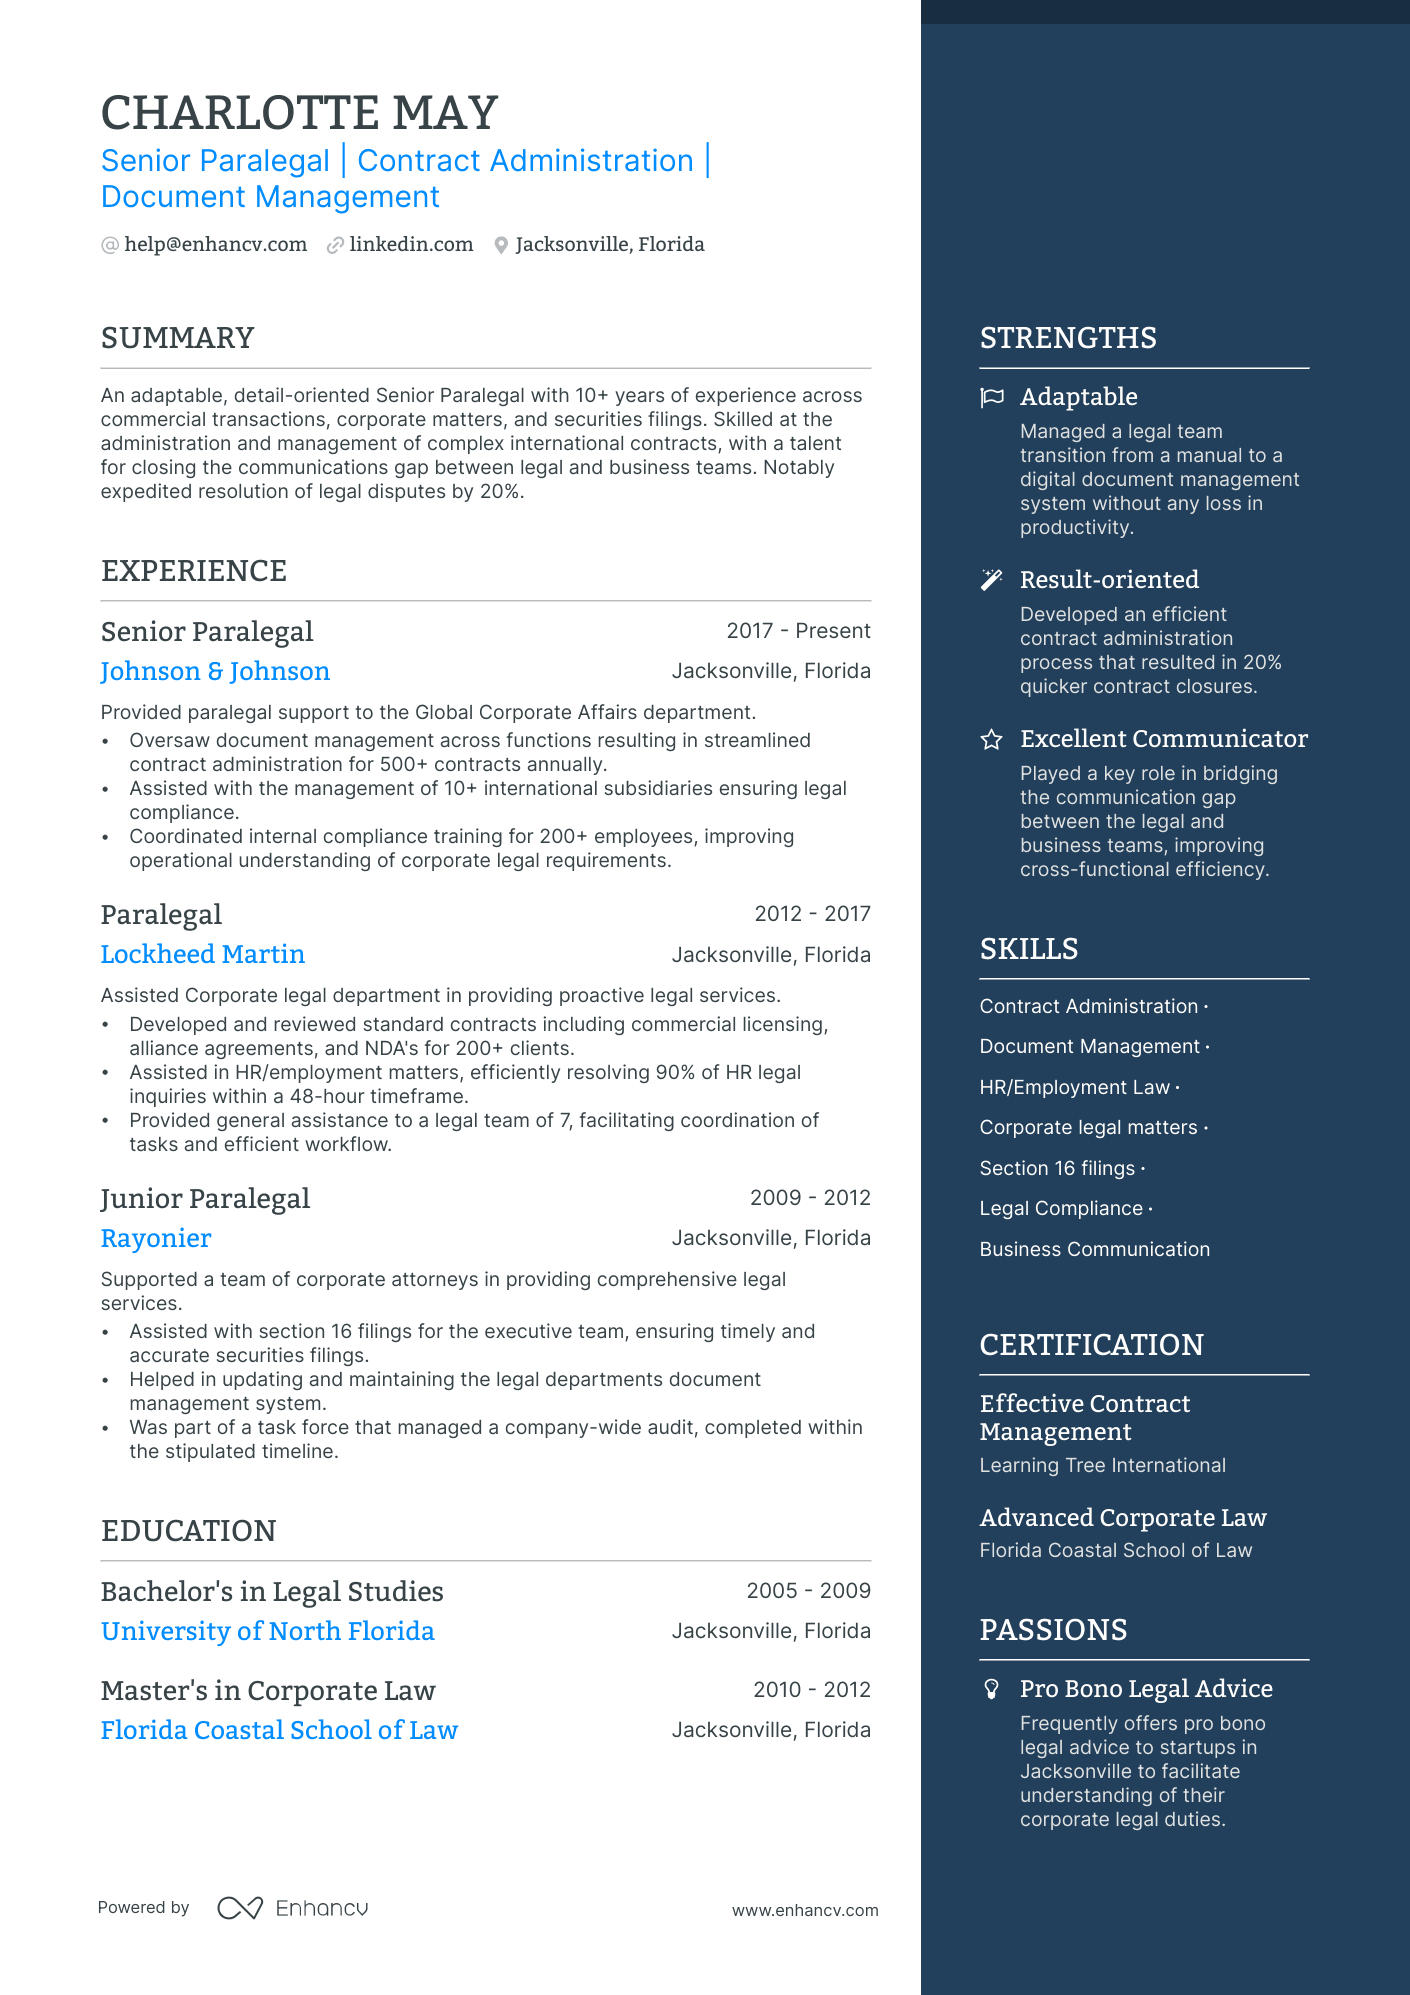 Senior Paralegal resume example